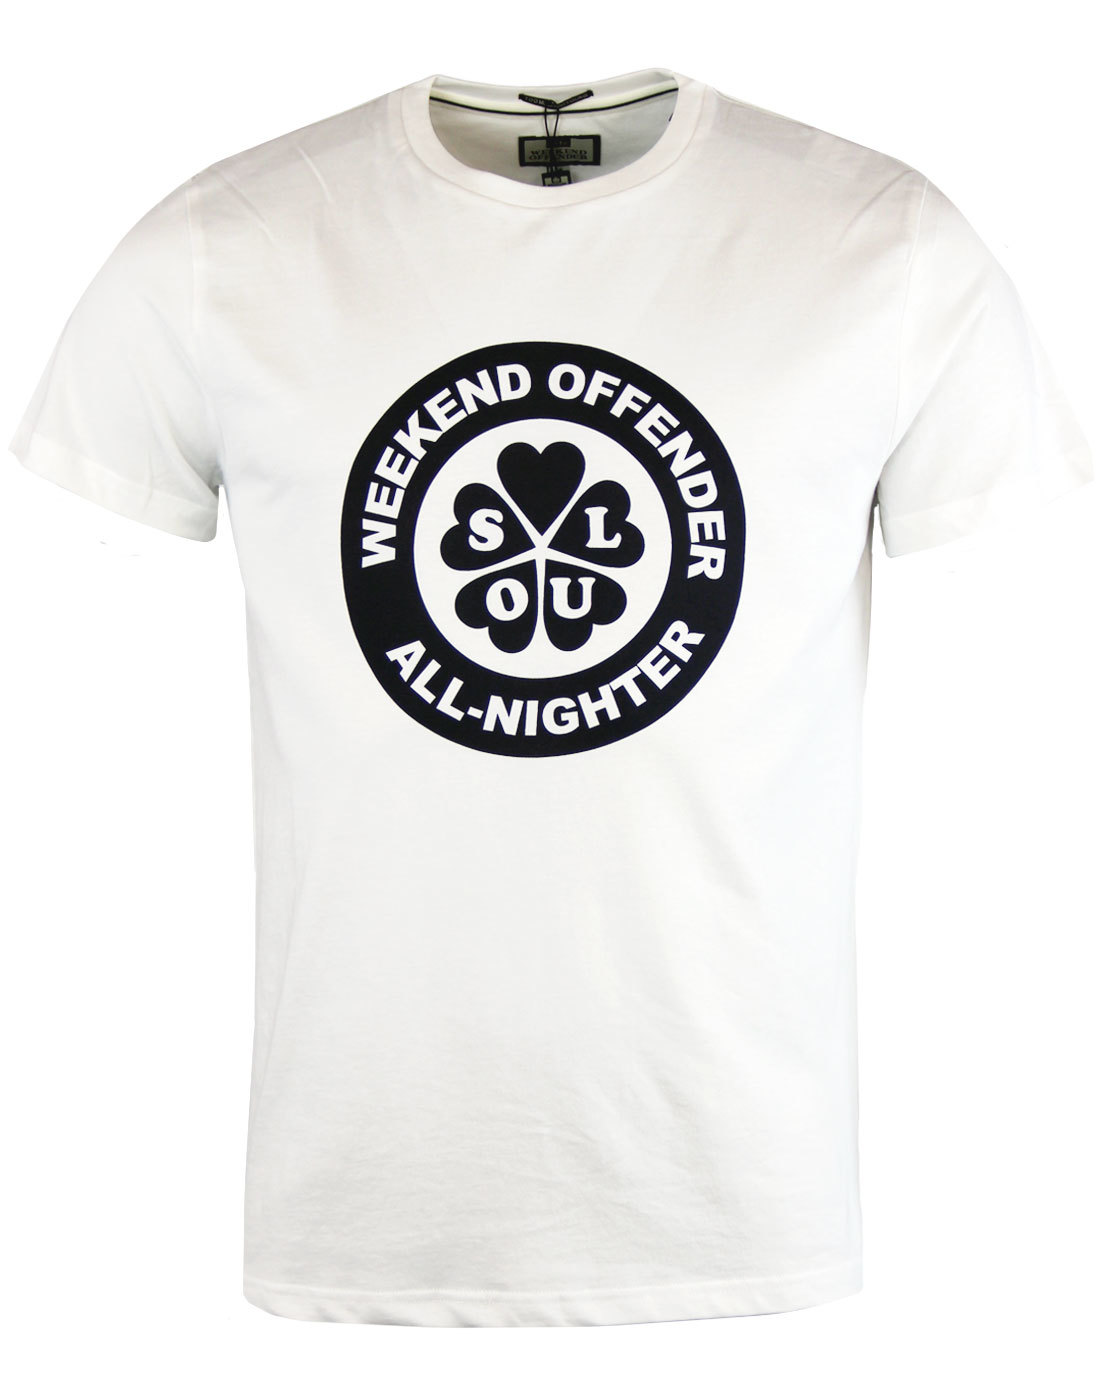 All Nighter WEEKEND OFFENDER Mod T-Shirt